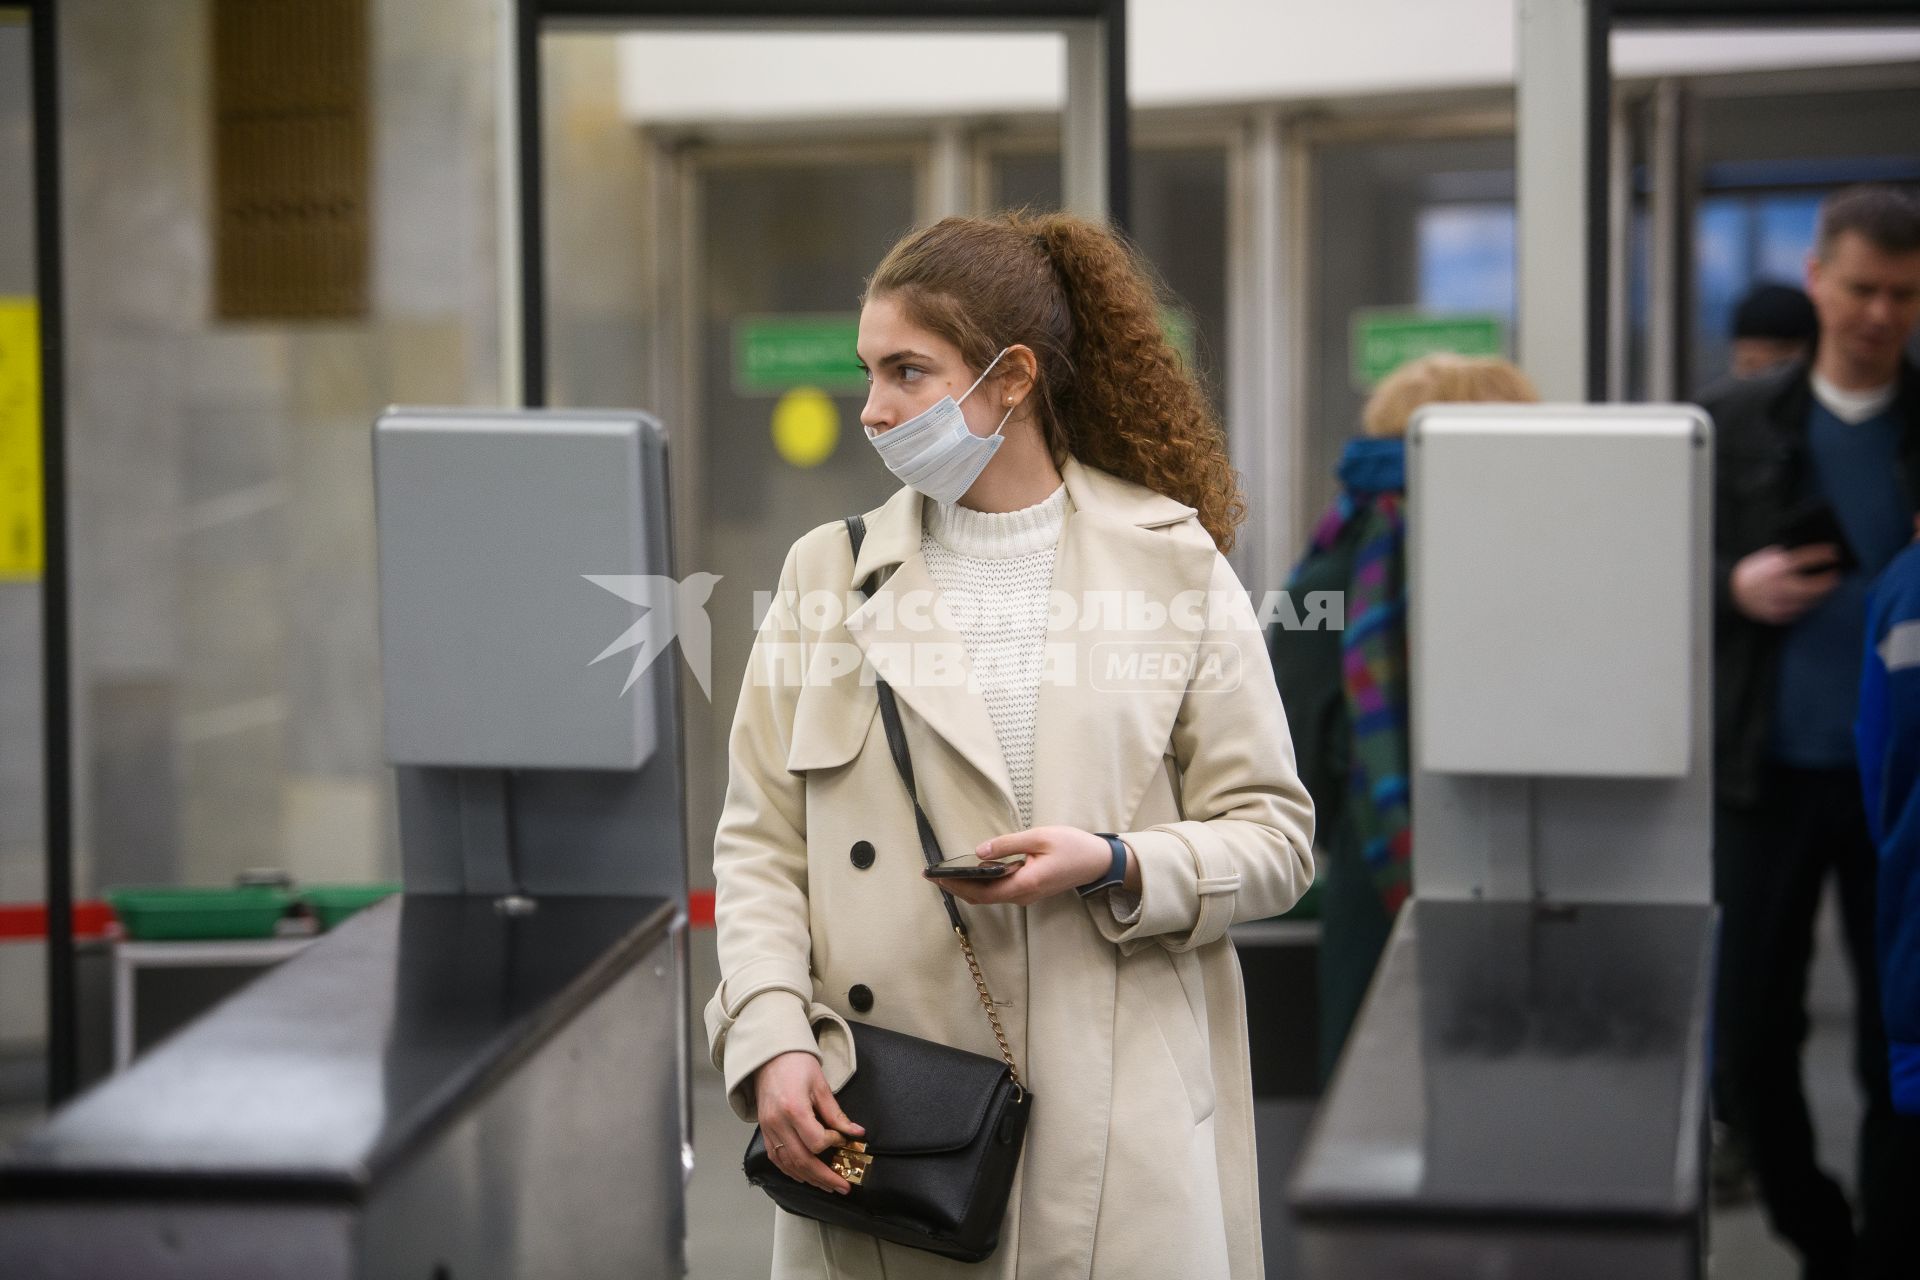 Екатеринбург. Женщина оплачивает проезд в метро